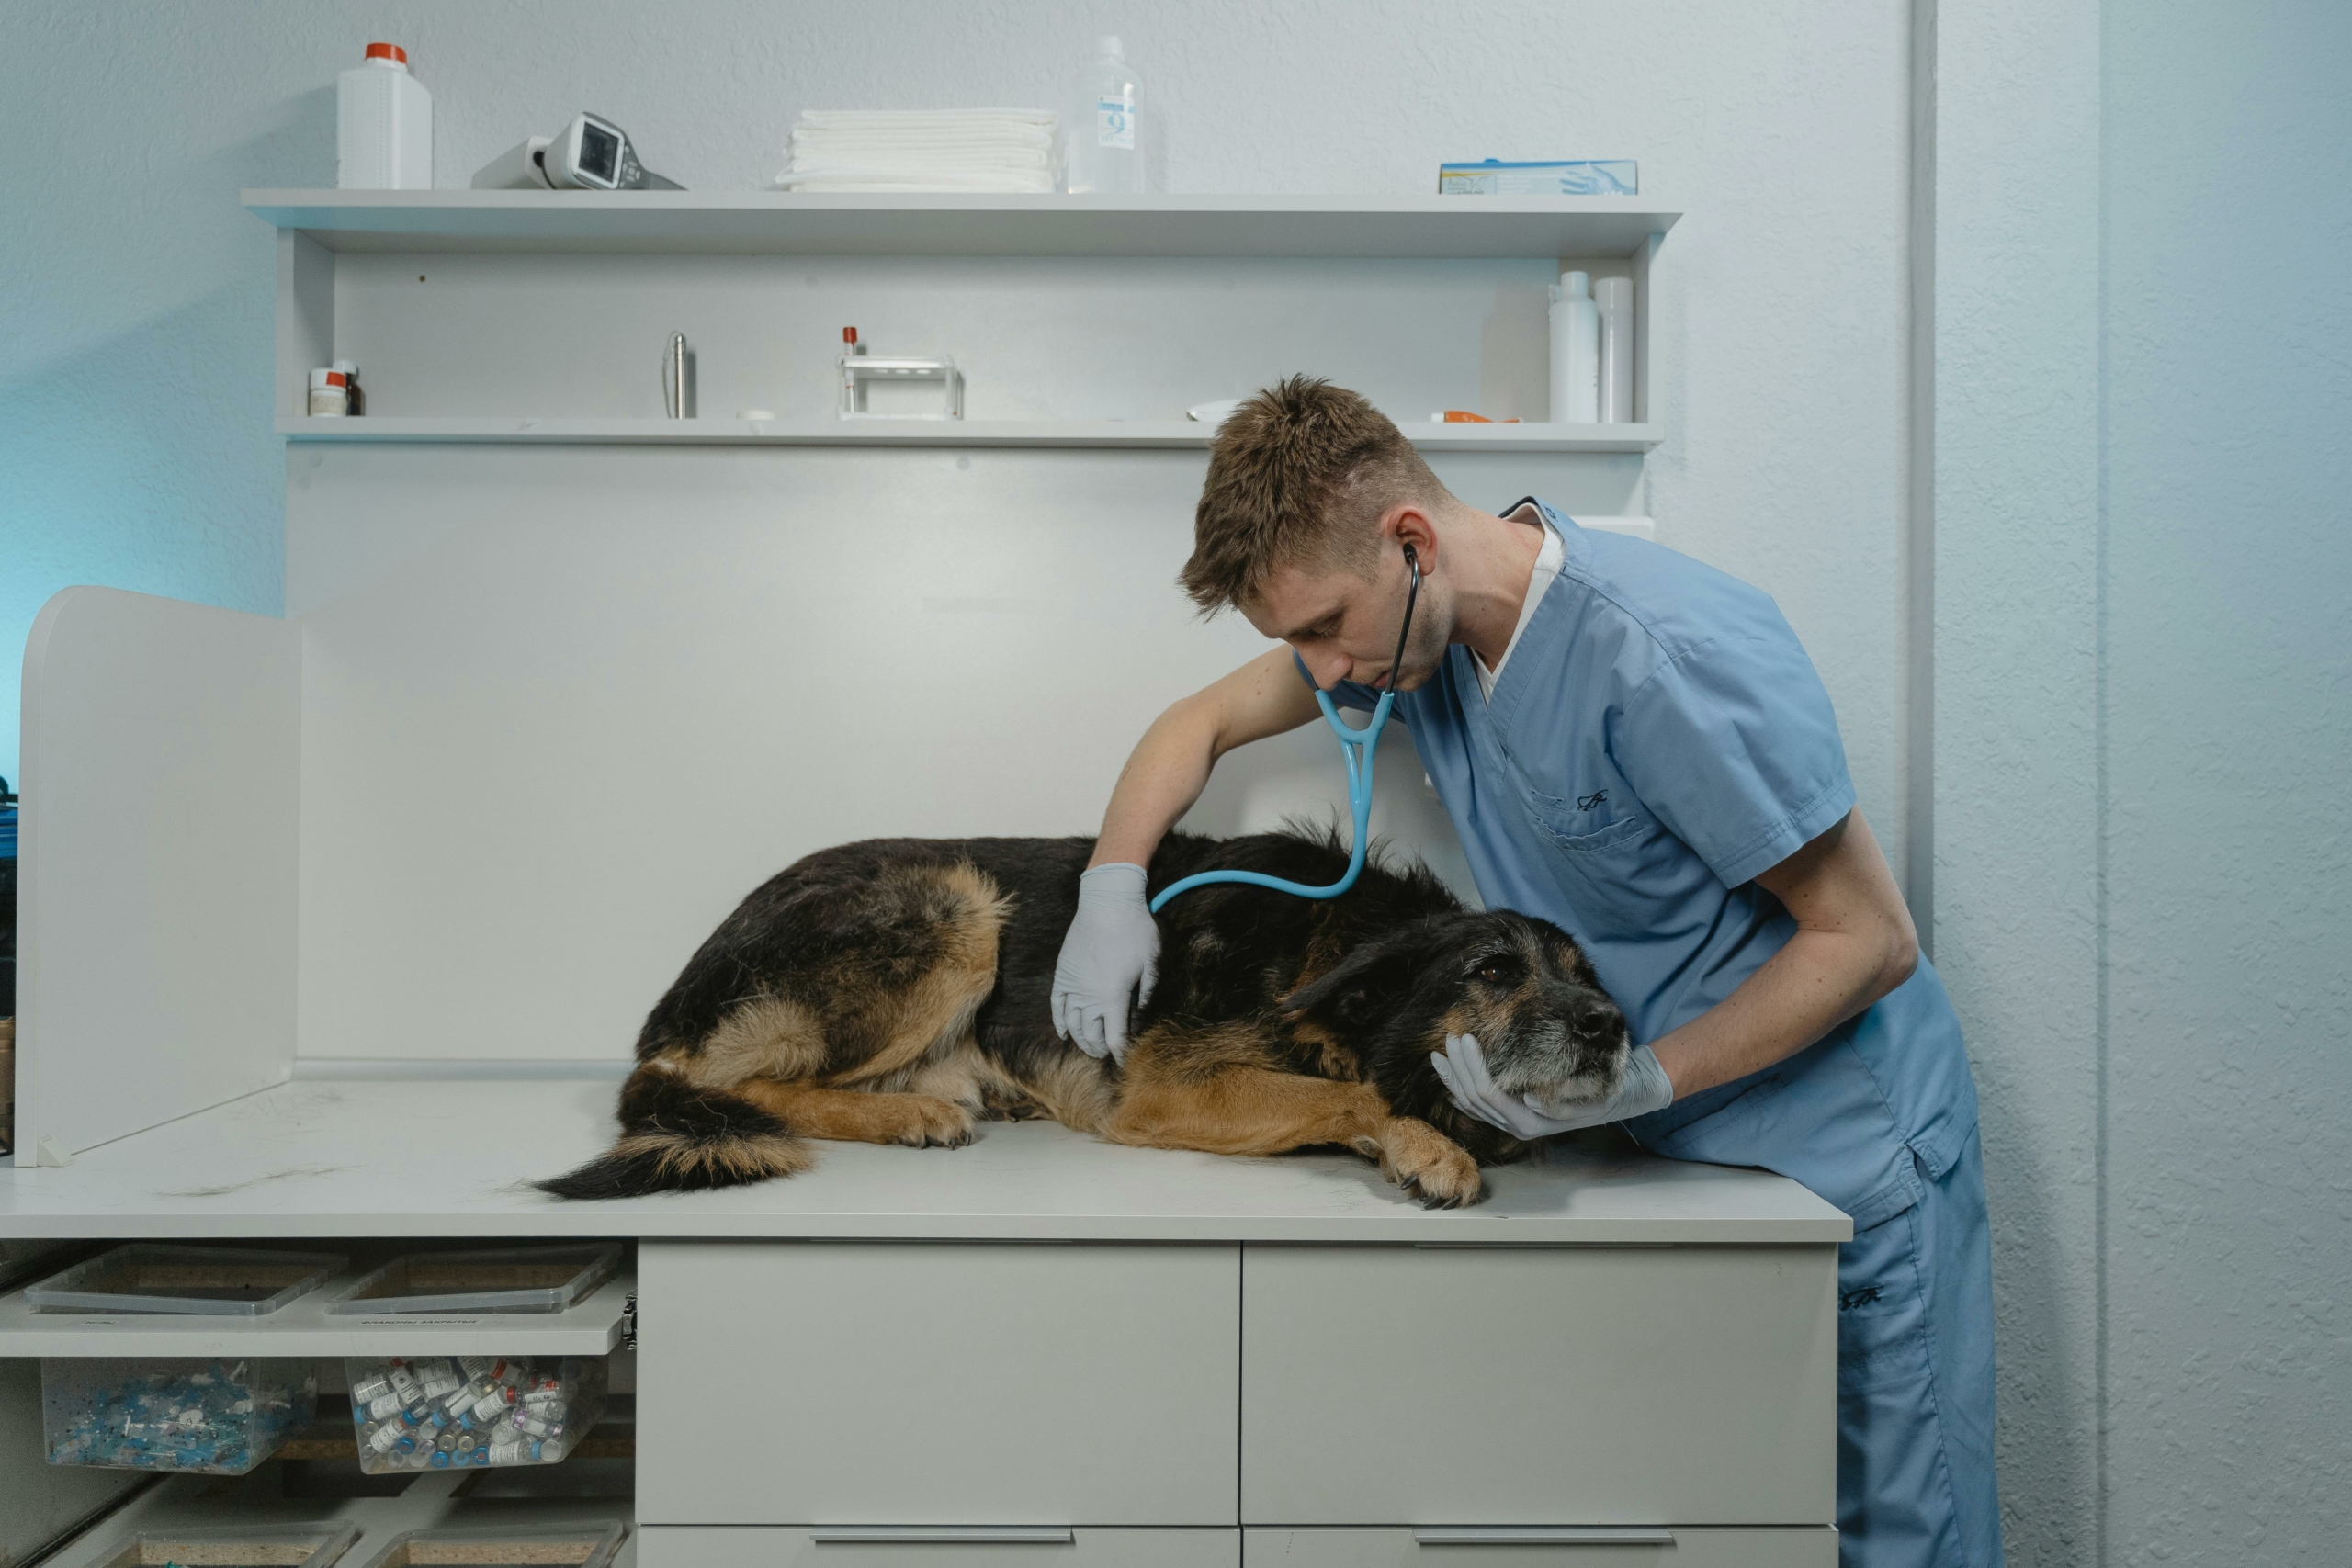 Post precedente: Le possibilità offerte dal corso assistente veterinario